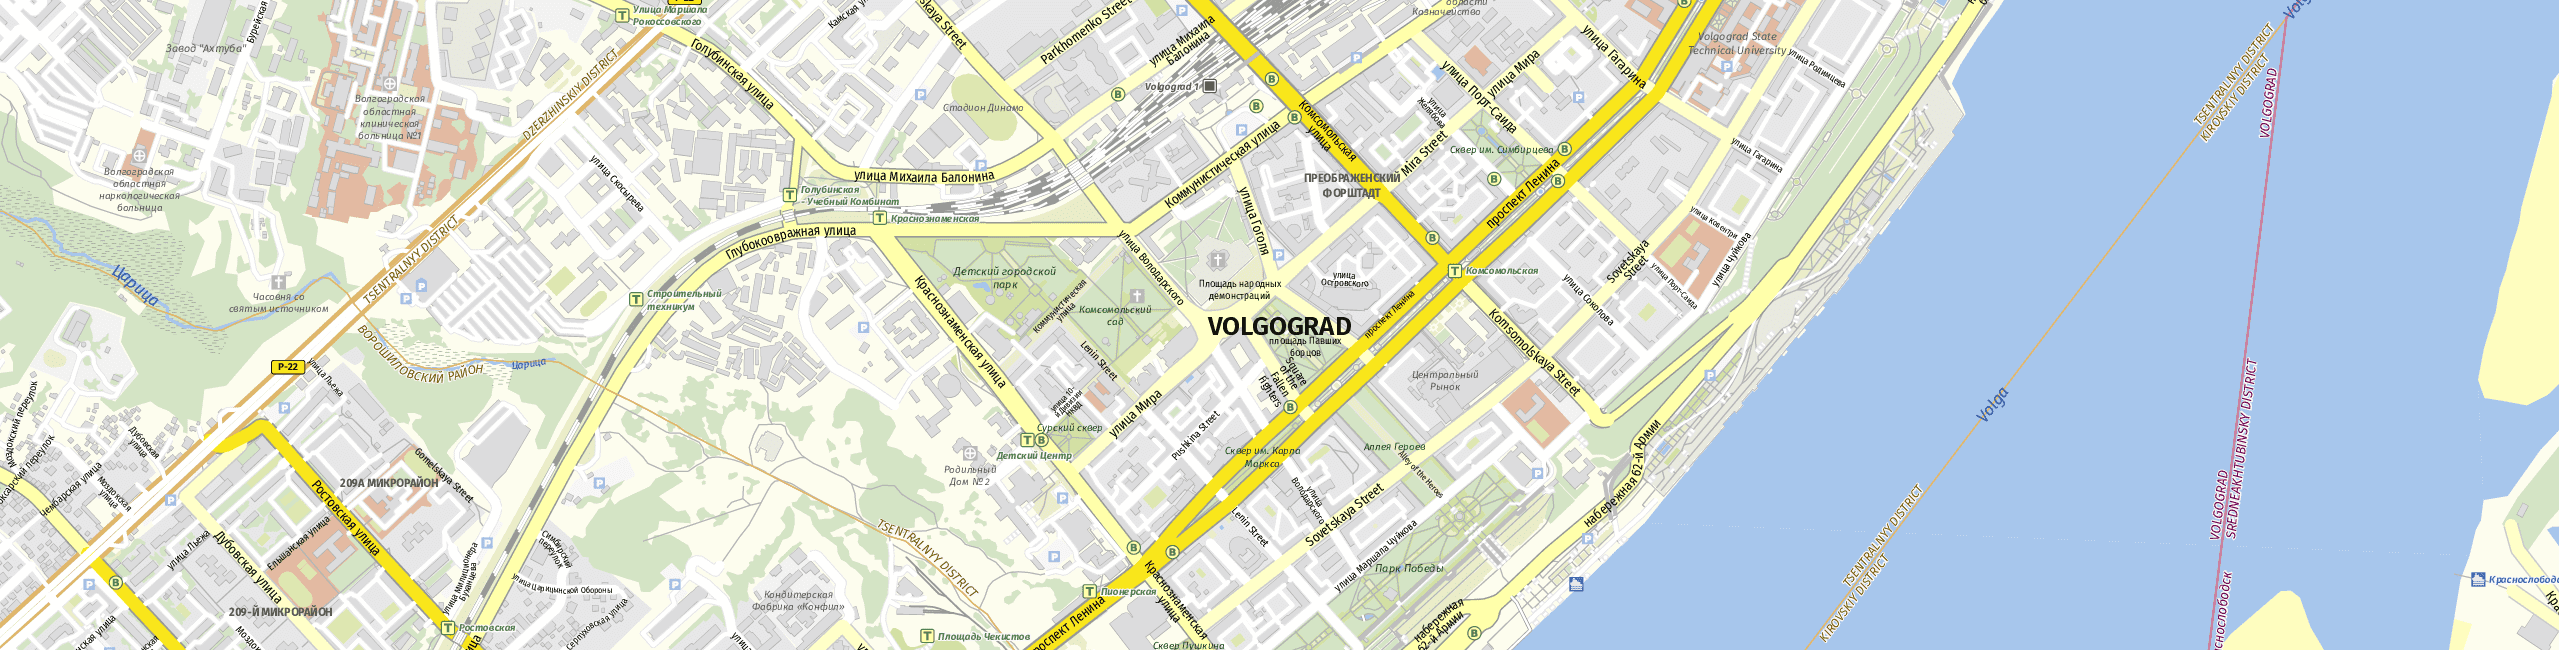 Stadtplan Volgograd zum Downloaden.